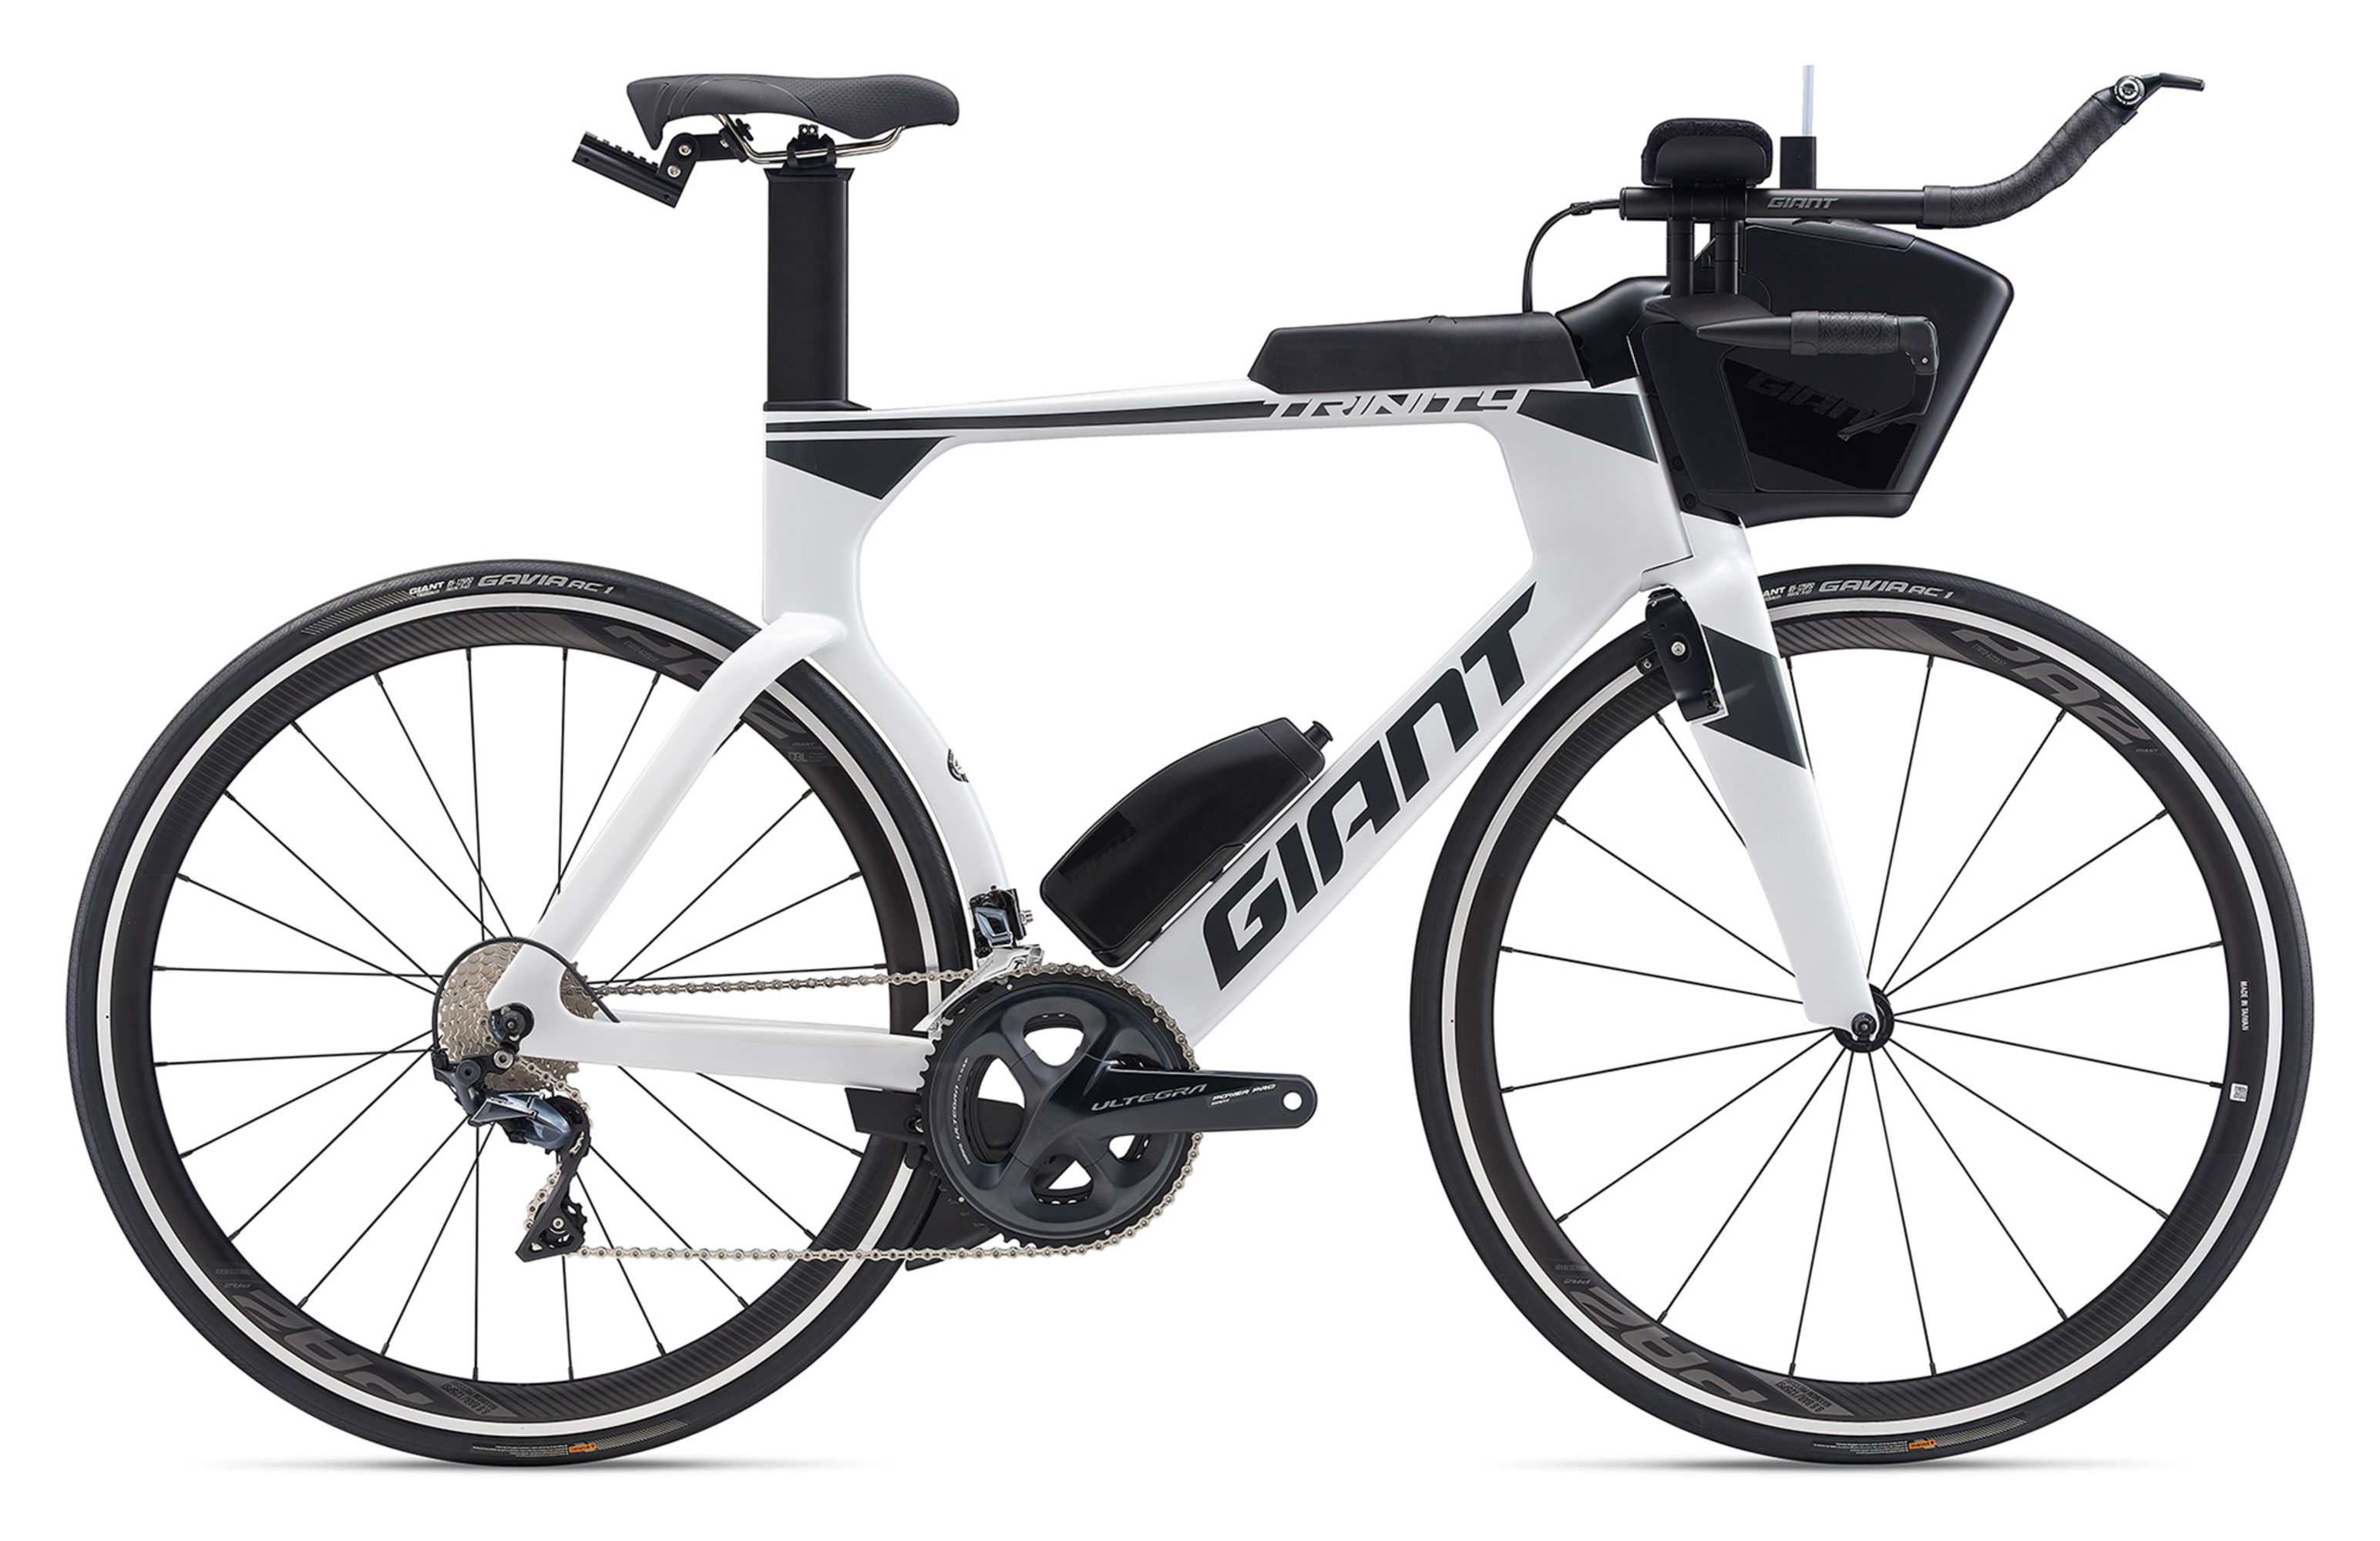  Отзывы о Шоссейном велосипеде Giant Trinity Advanced Pro 2 2020